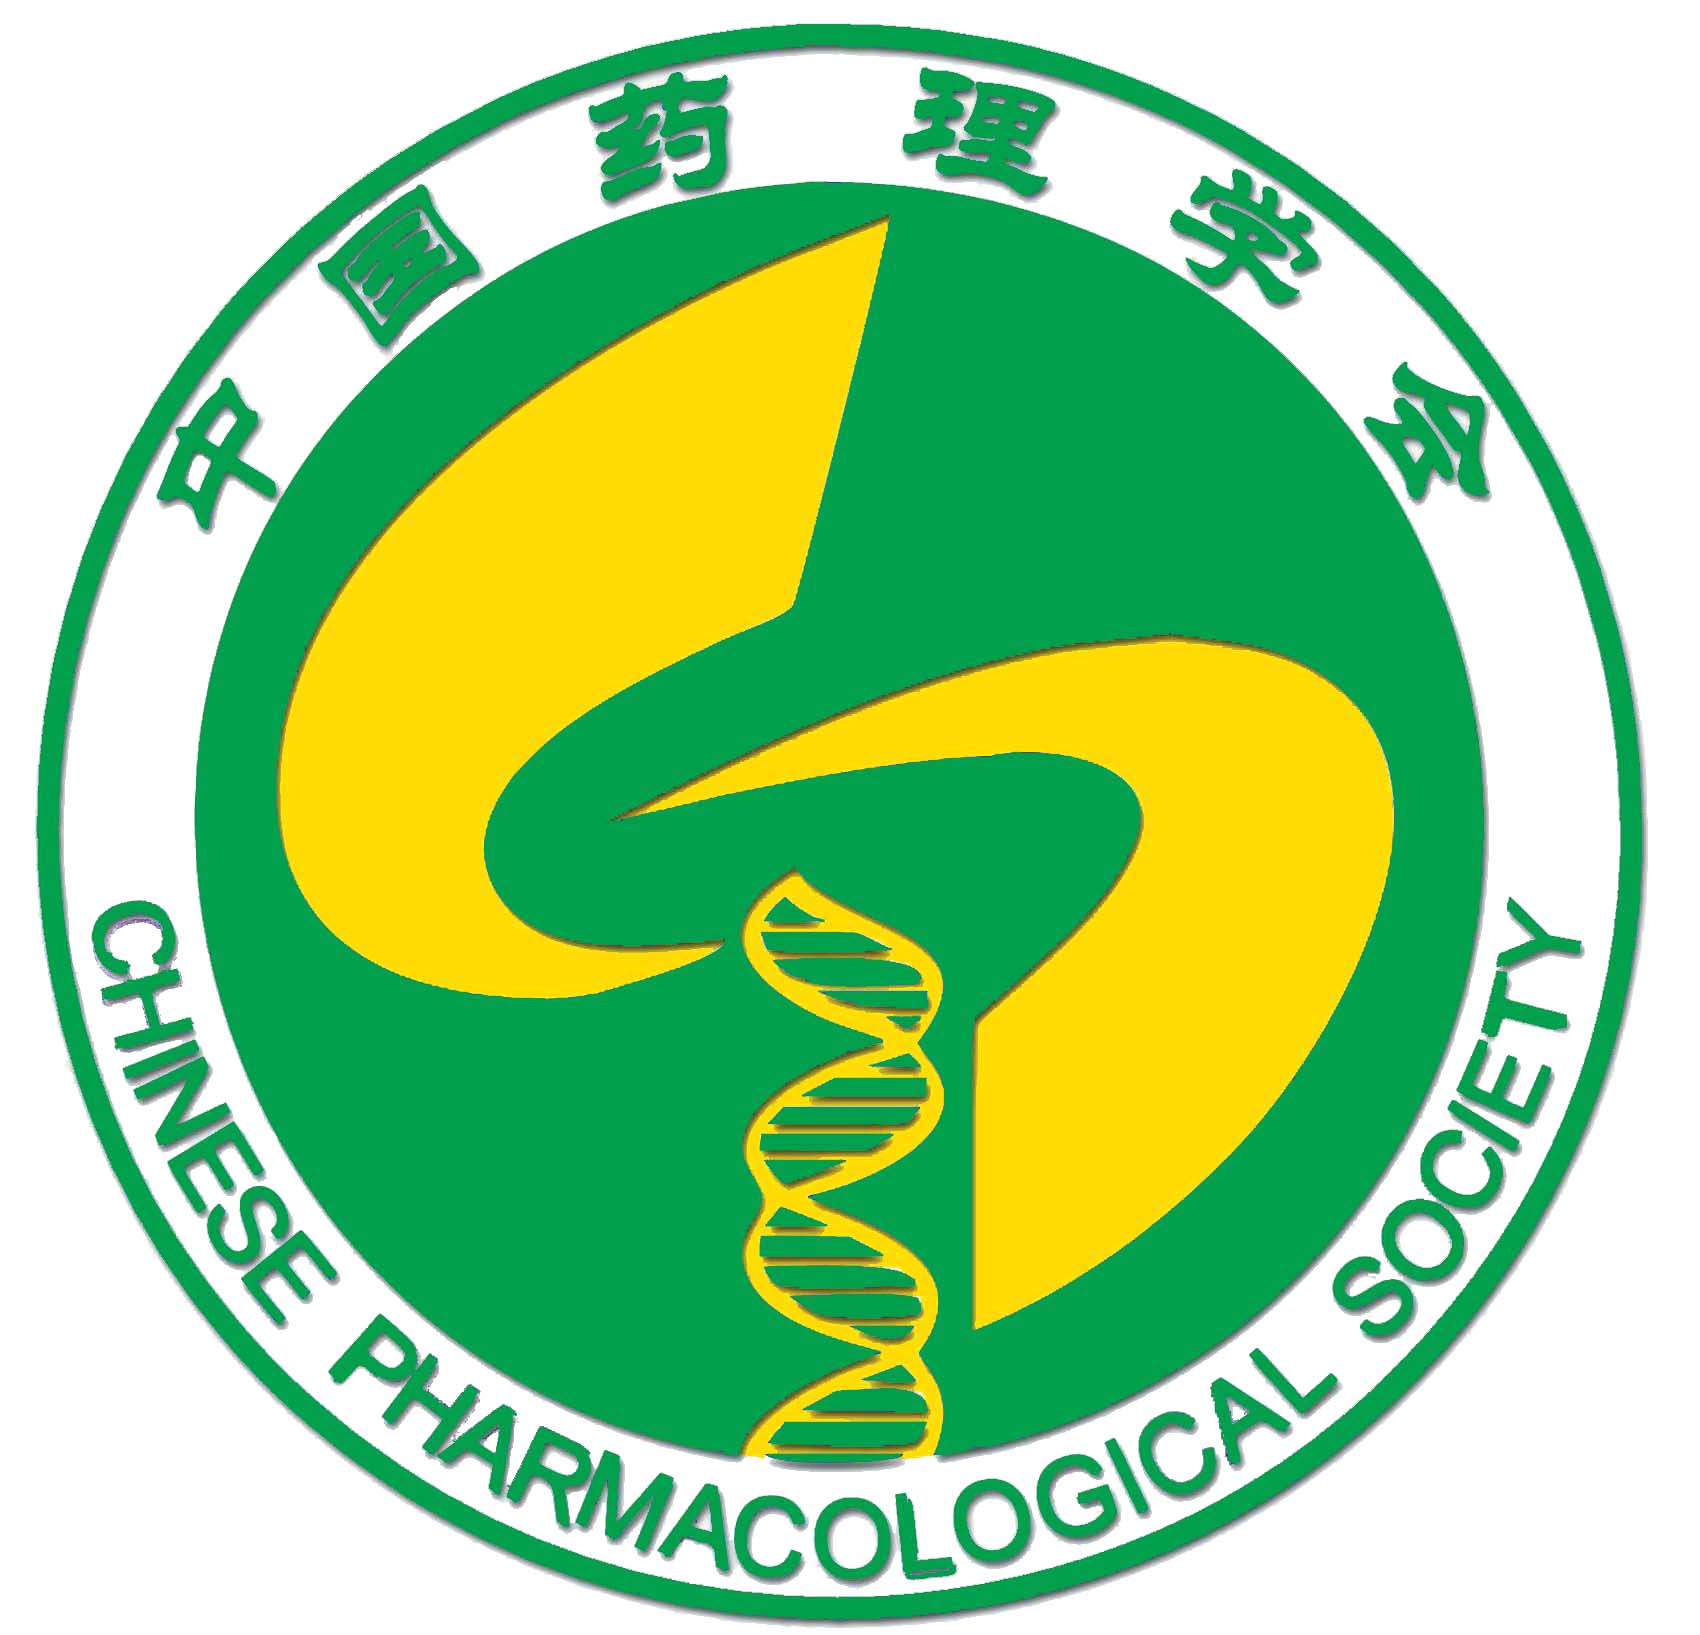 EB 2014 Chinese Pharmacological Society logo